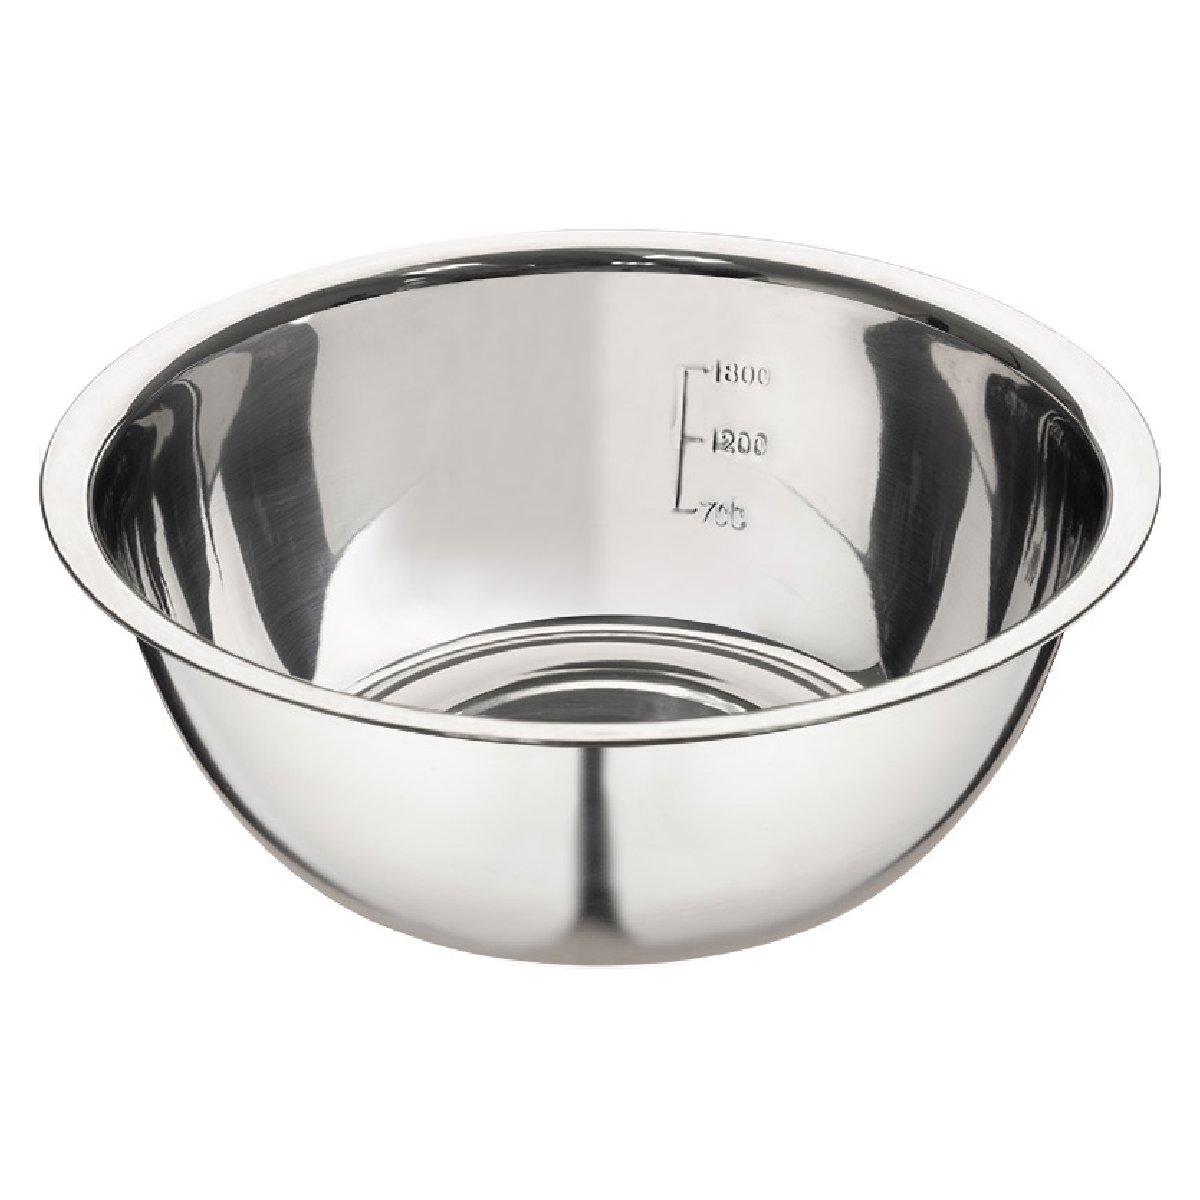 Миска Bowl-Roll-24, объем 2,5 л, из нержавеющей стали, зеркальная полировка, диаметр 24 см (003278)Купить